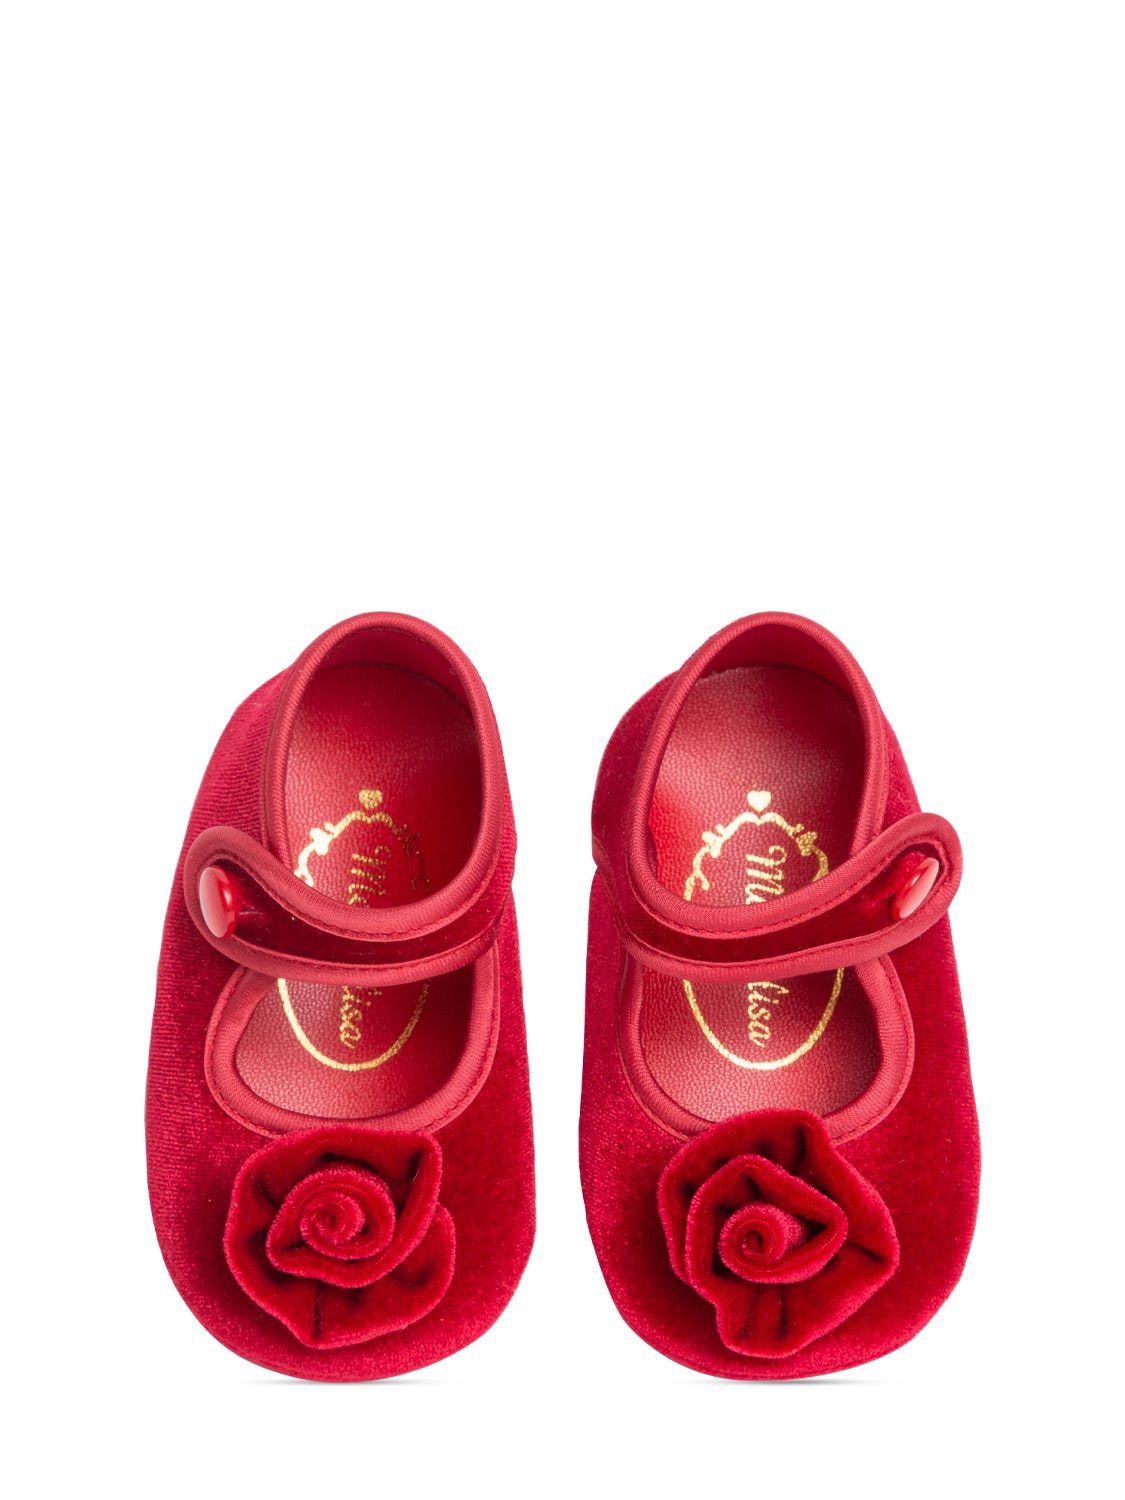 玫瑰花装饰天鹅绒芭蕾平底鞋